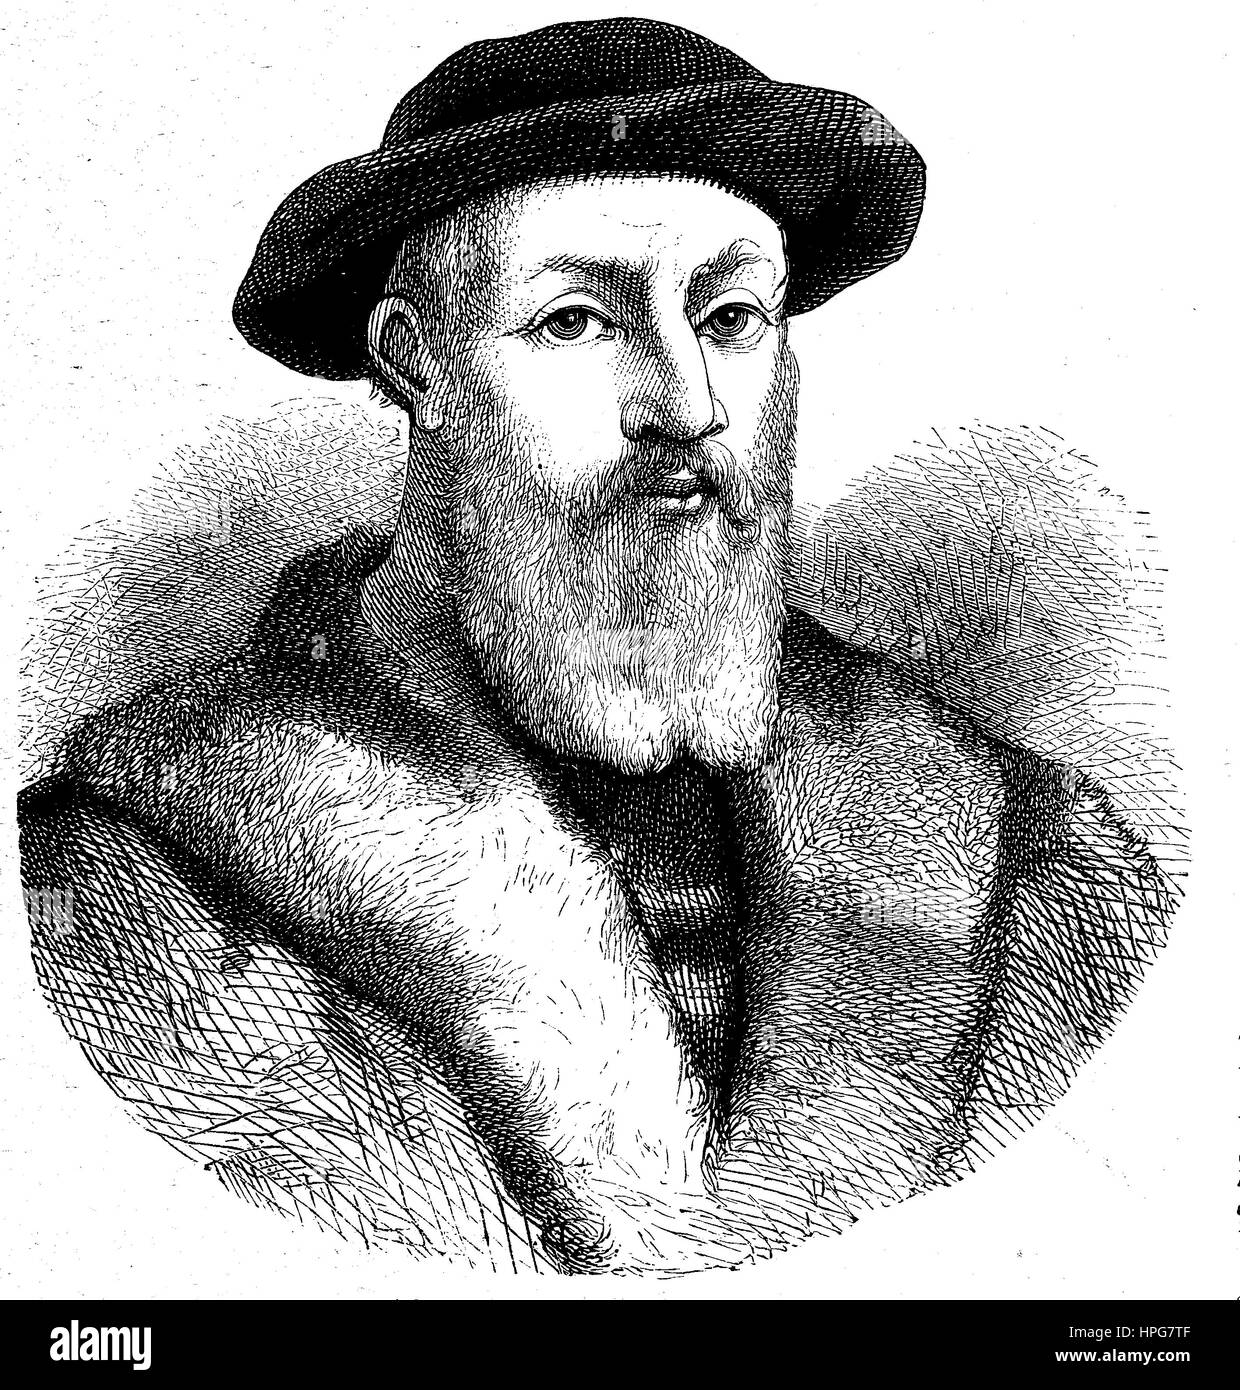 Ferdinand Magellan, Fernando de Magallanes, 1480-1521. war ein portugiesischer Entdecker, die die spanische Expedition nach Ostindien von 1519 bis 1522, organisiert wiederum die erste Umrundung der Erde,, digital verbesserte Wiedergabe von einem Holzschnitt aus dem Jahr 1885 Stockfoto